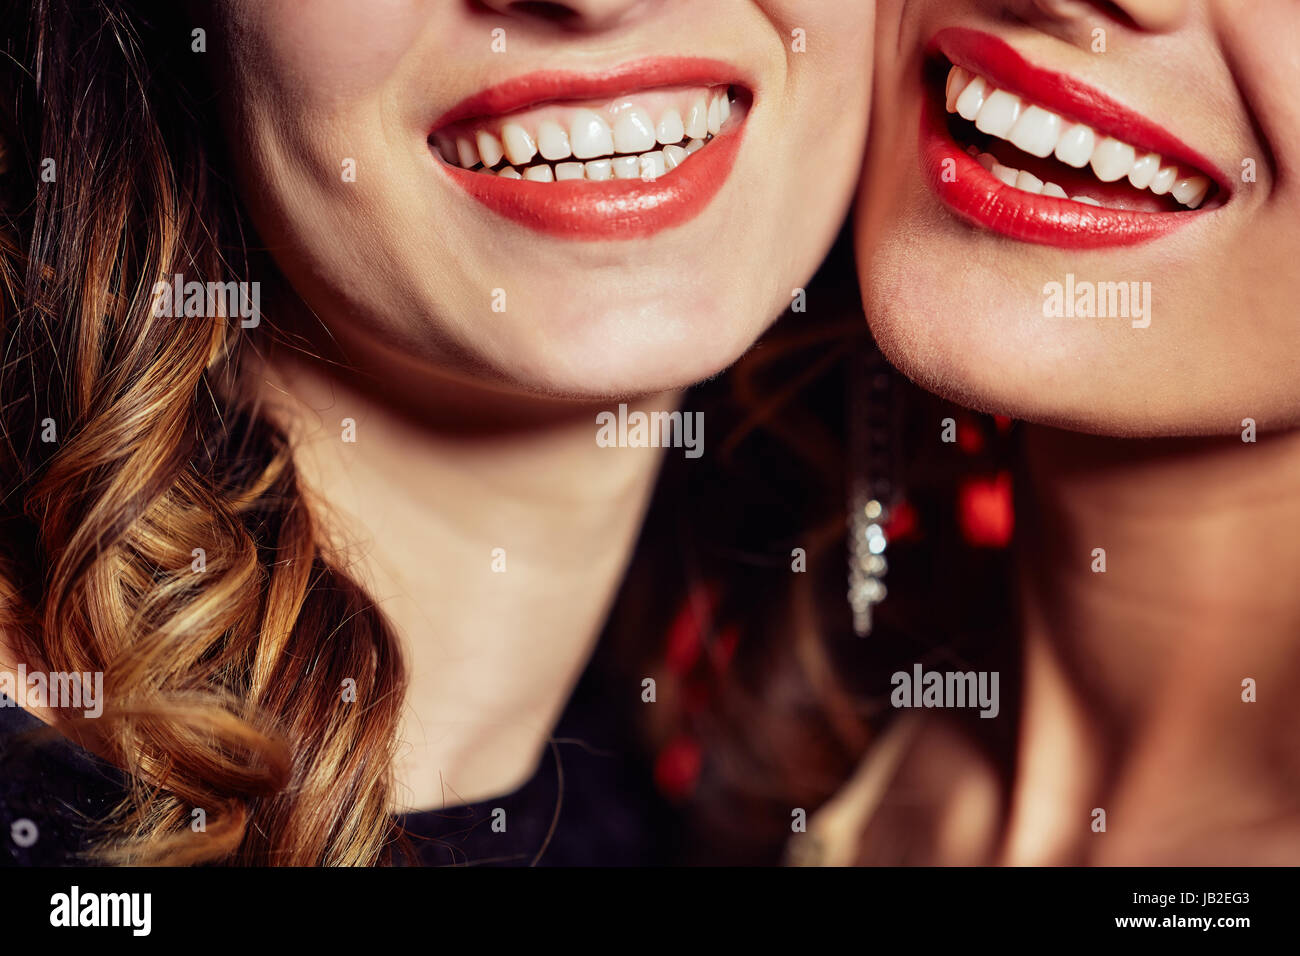 Schillernde Lächeln der jungen Frauen Stockfoto